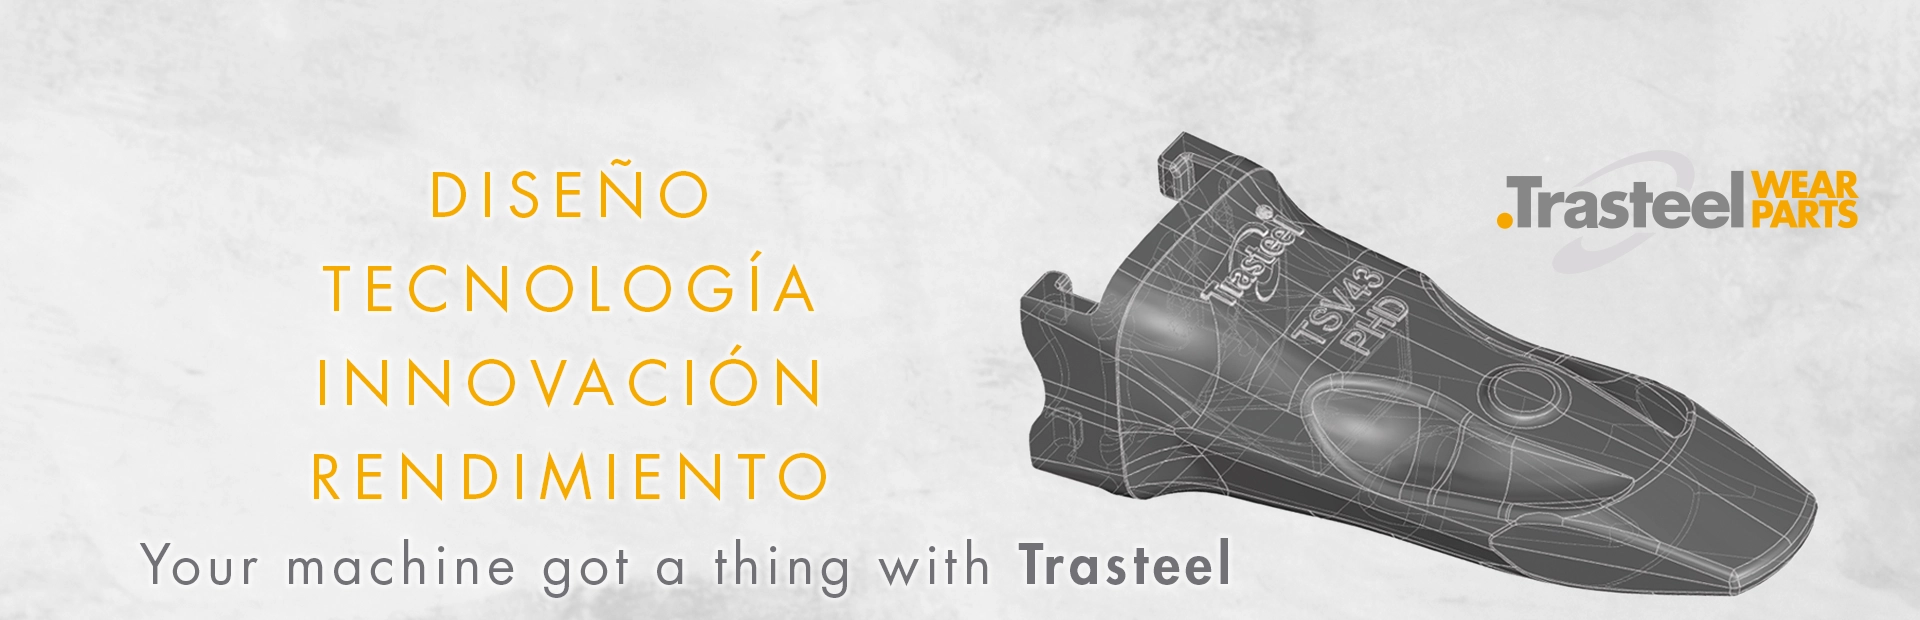 Diseño, tecnología, innovacion y rendimiento - Trasteel Wear Parts